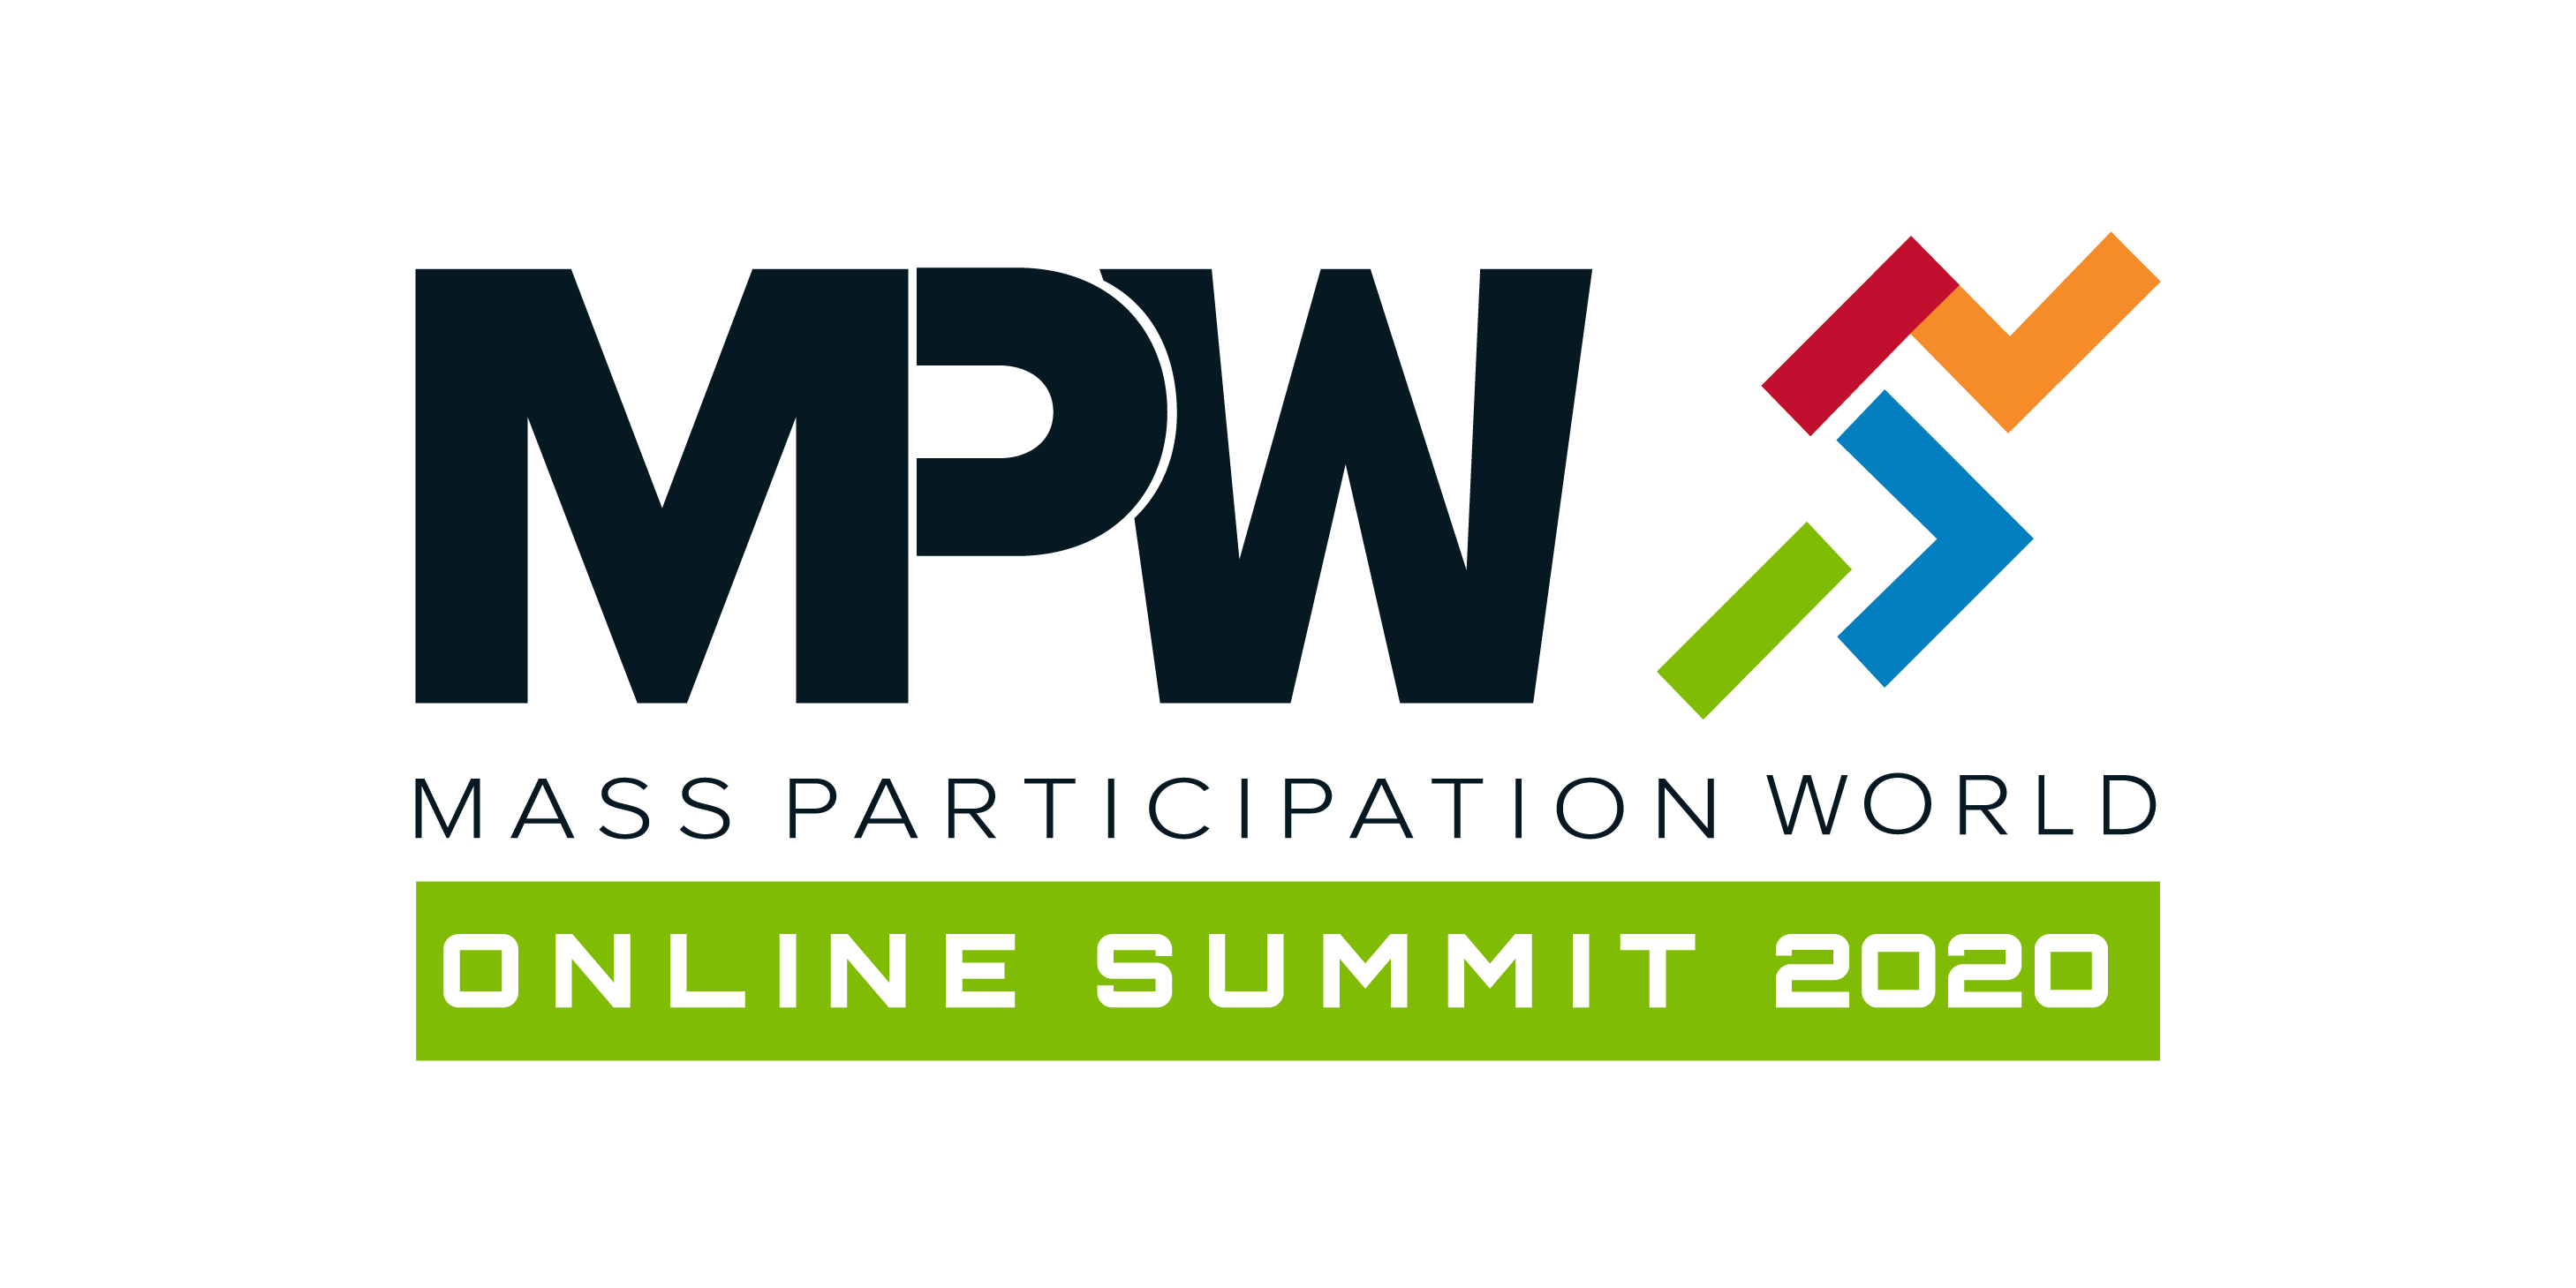 Mass Participation World Online Summit 2020